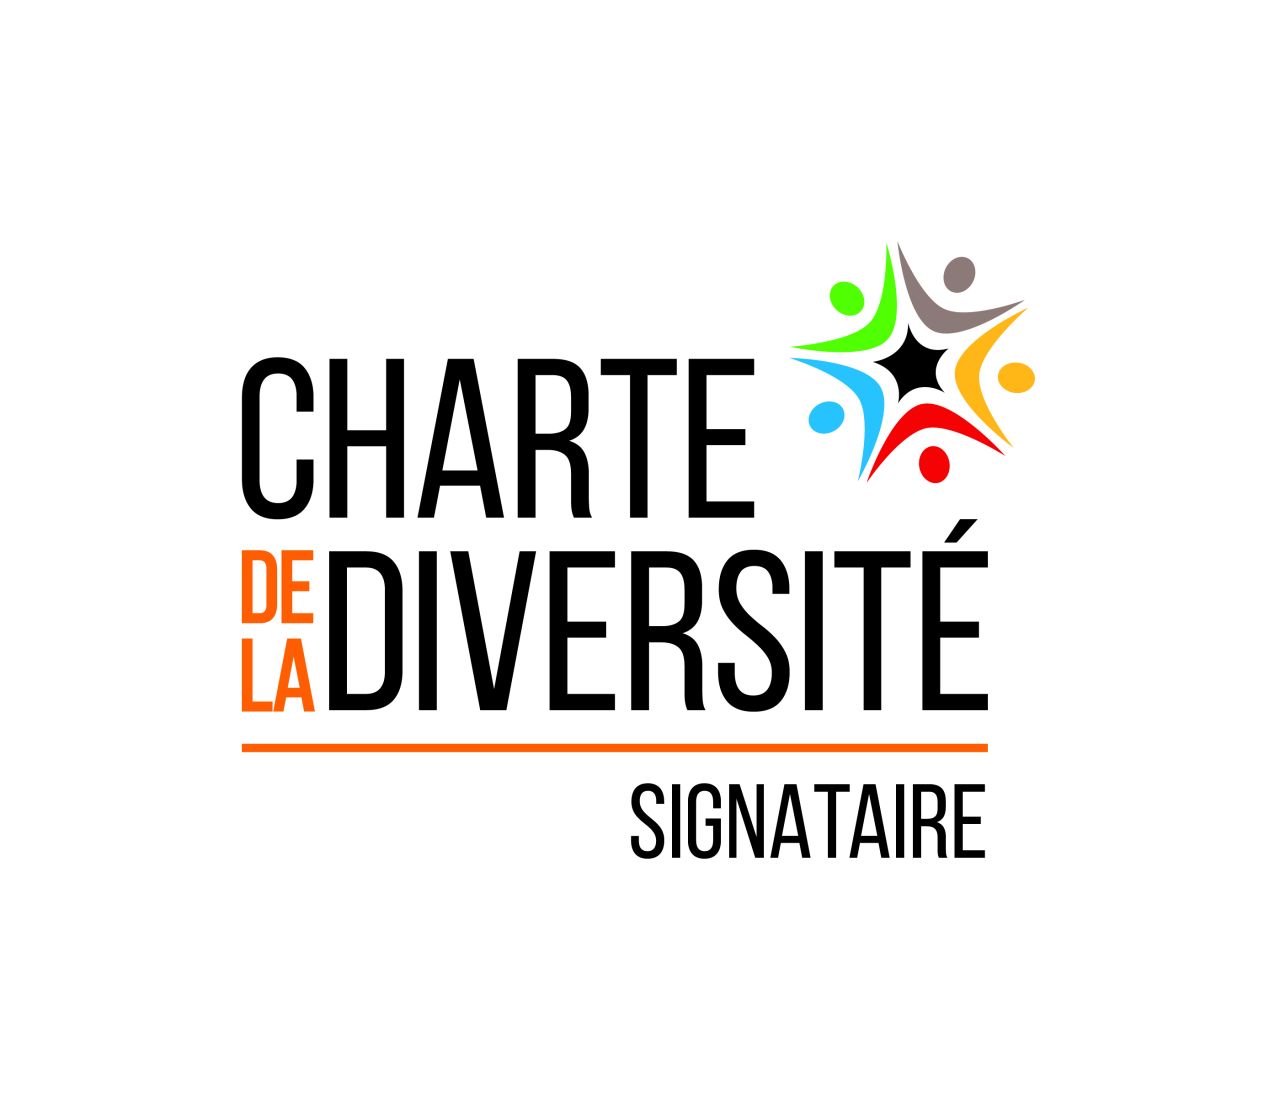 Charte de la diversité 👩🏼‍🦱 👨🏽 🧔🏻 👩🏾